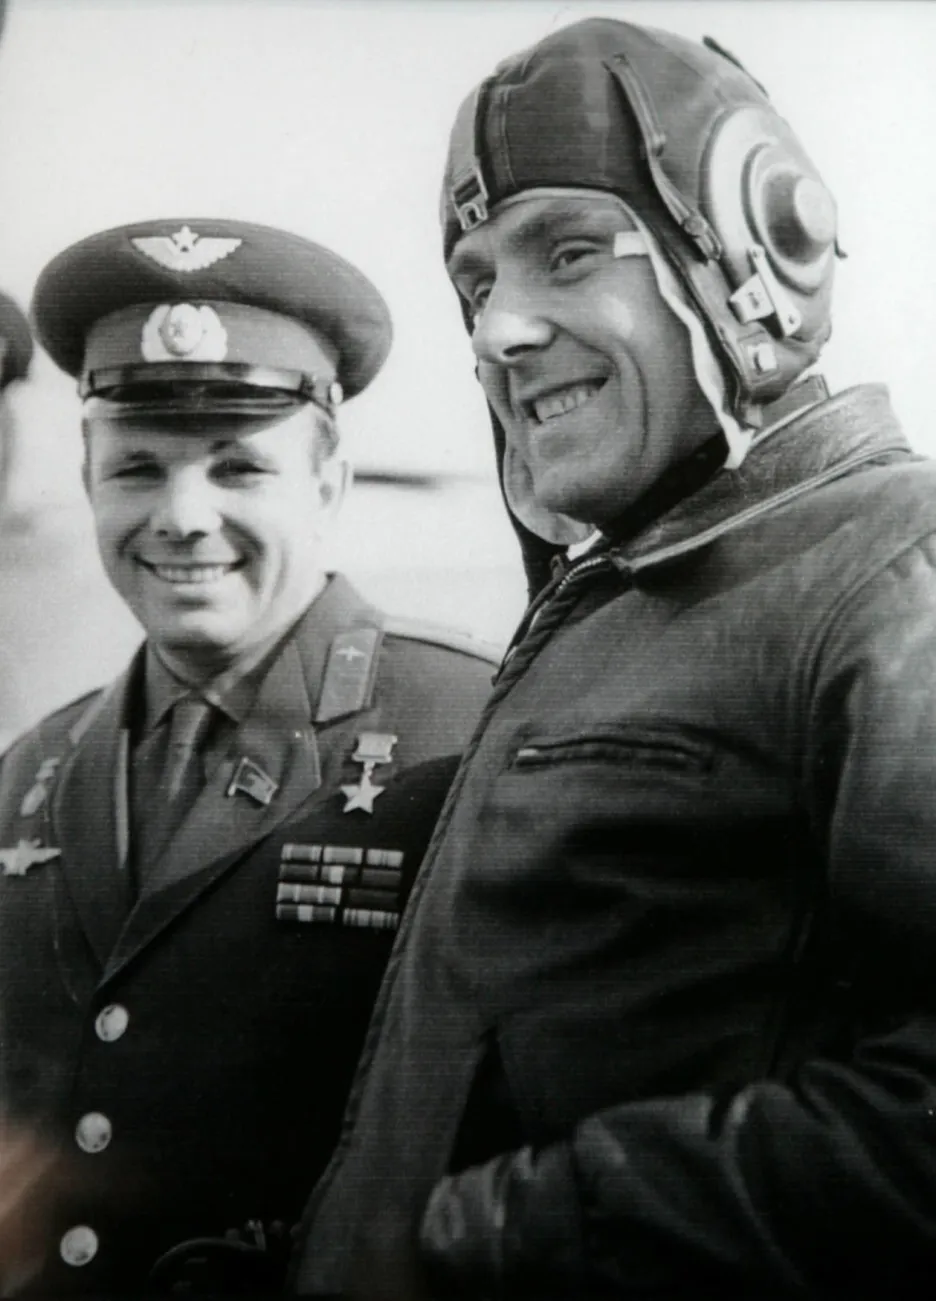 Vlevo Gagarin, vpravo Komarov